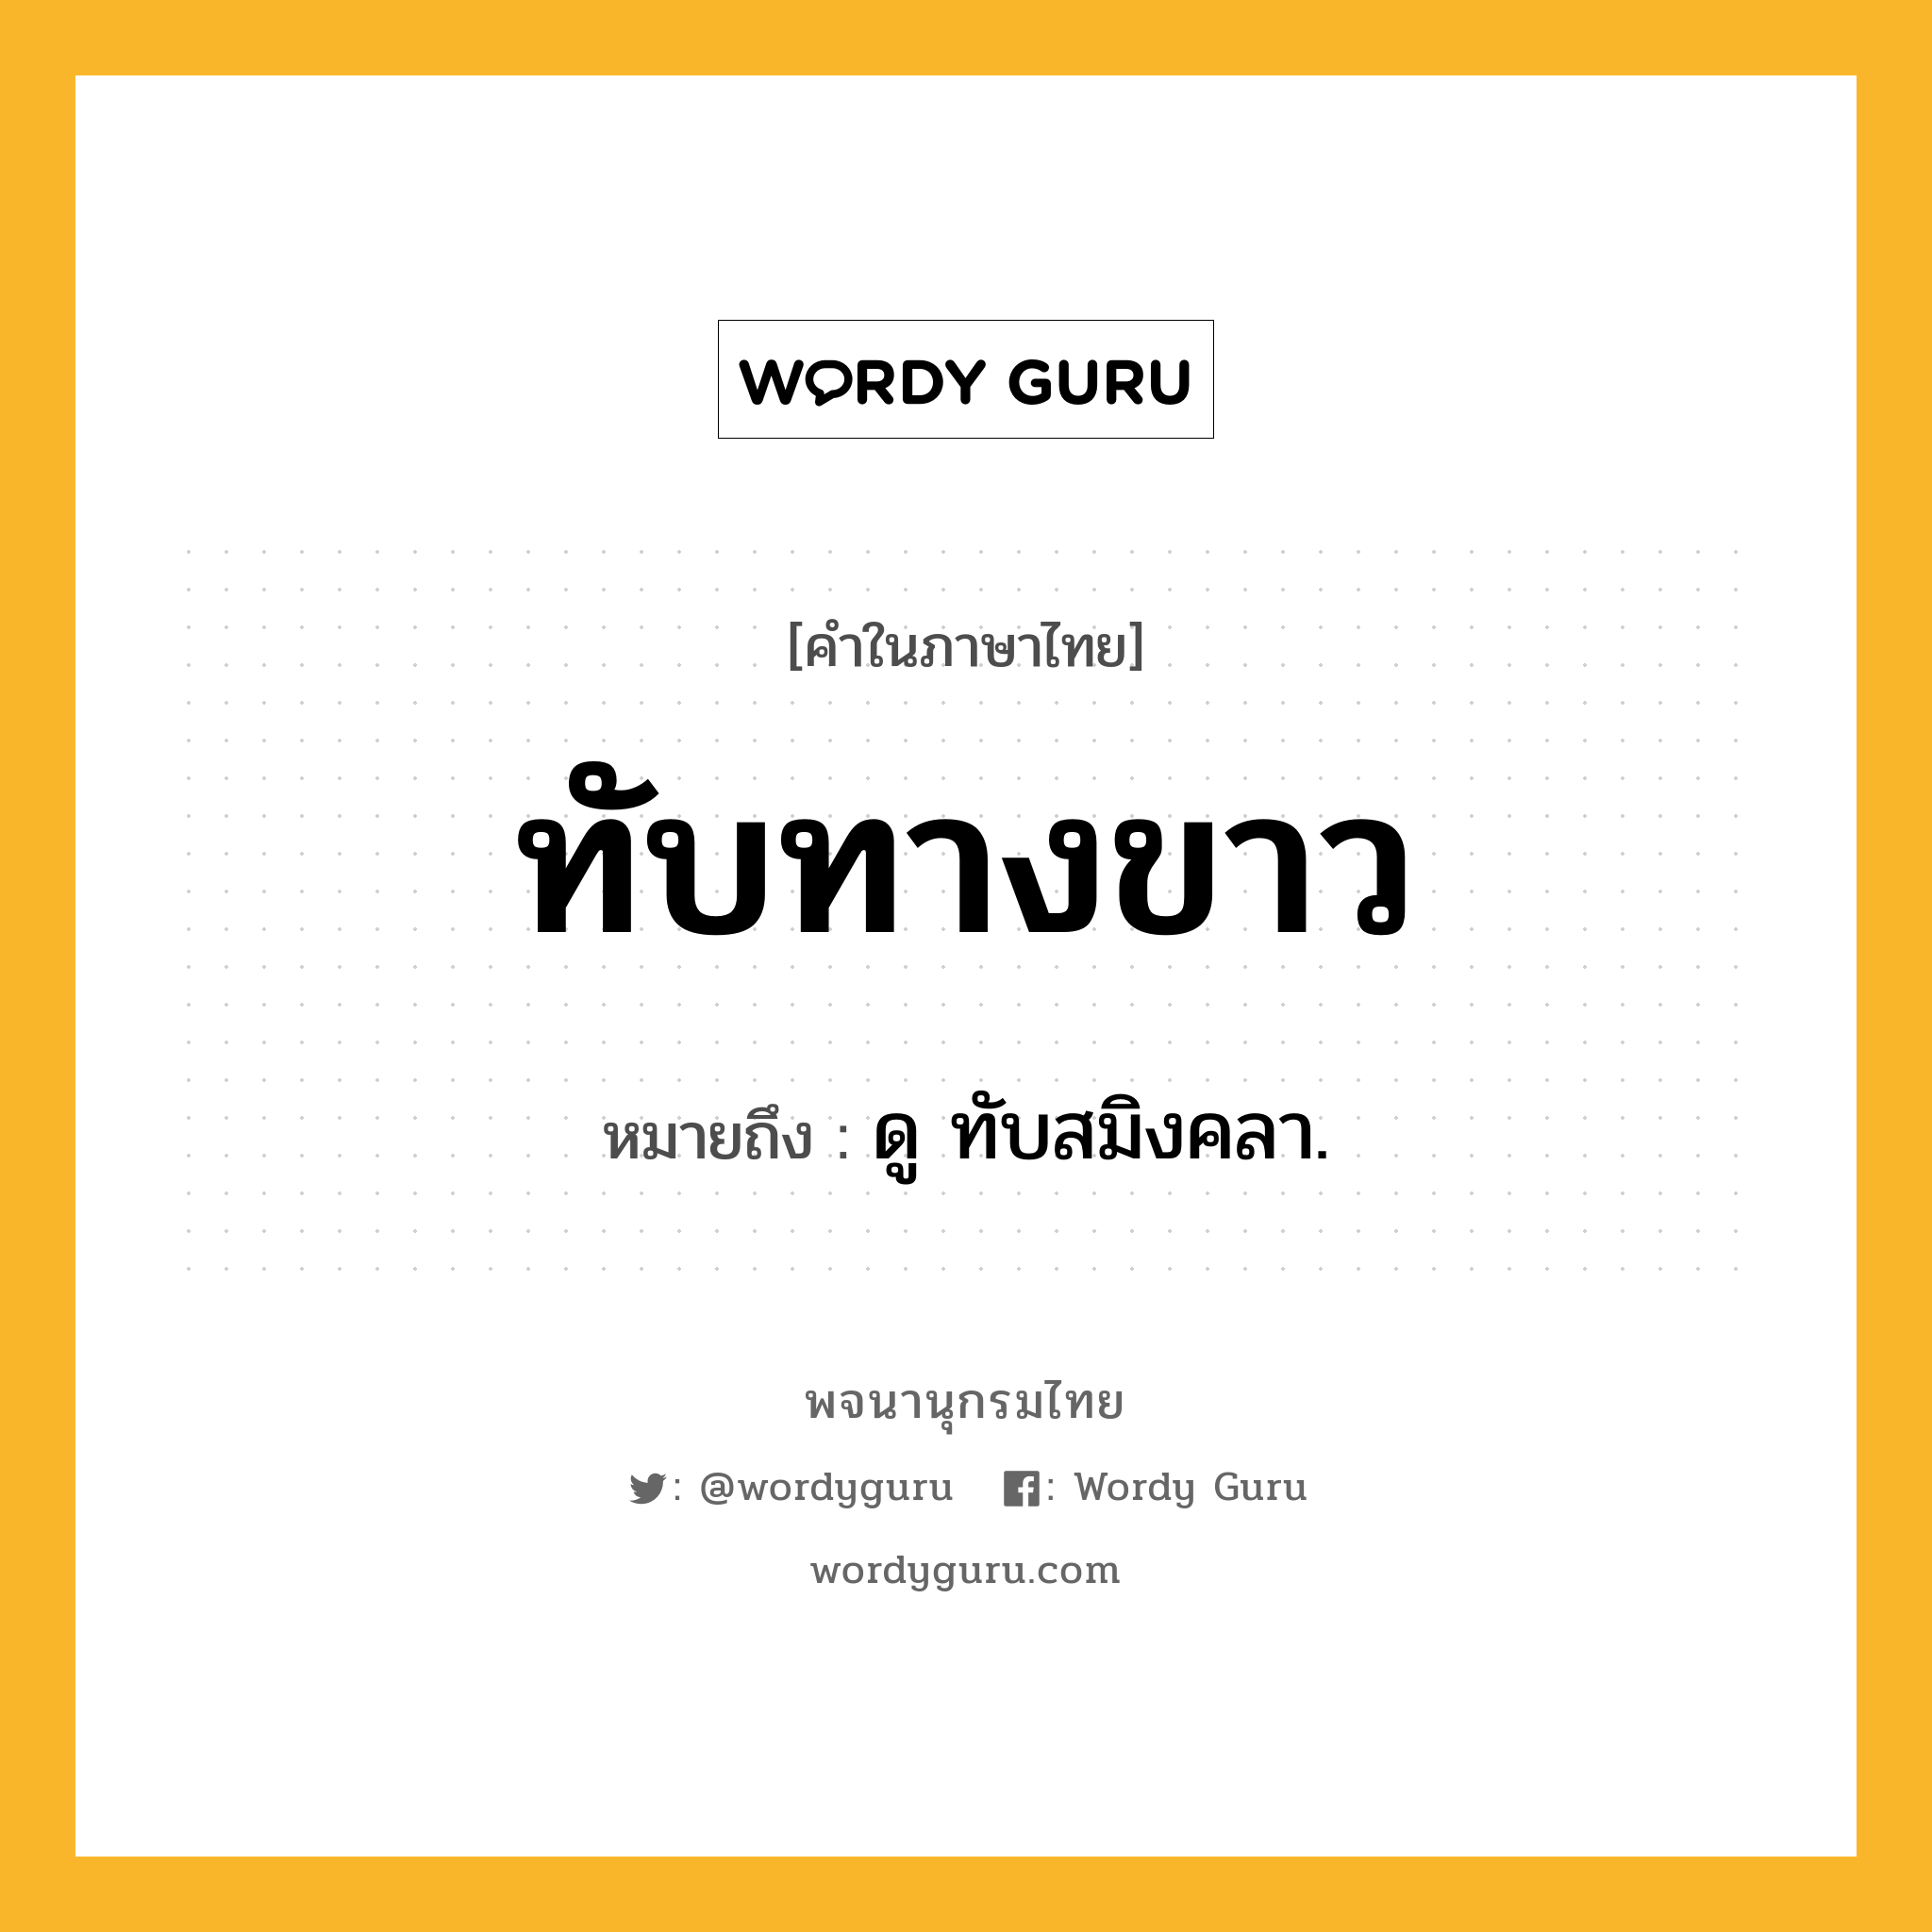 ทับทางขาว ความหมาย หมายถึงอะไร?, คำในภาษาไทย ทับทางขาว หมายถึง ดู ทับสมิงคลา.